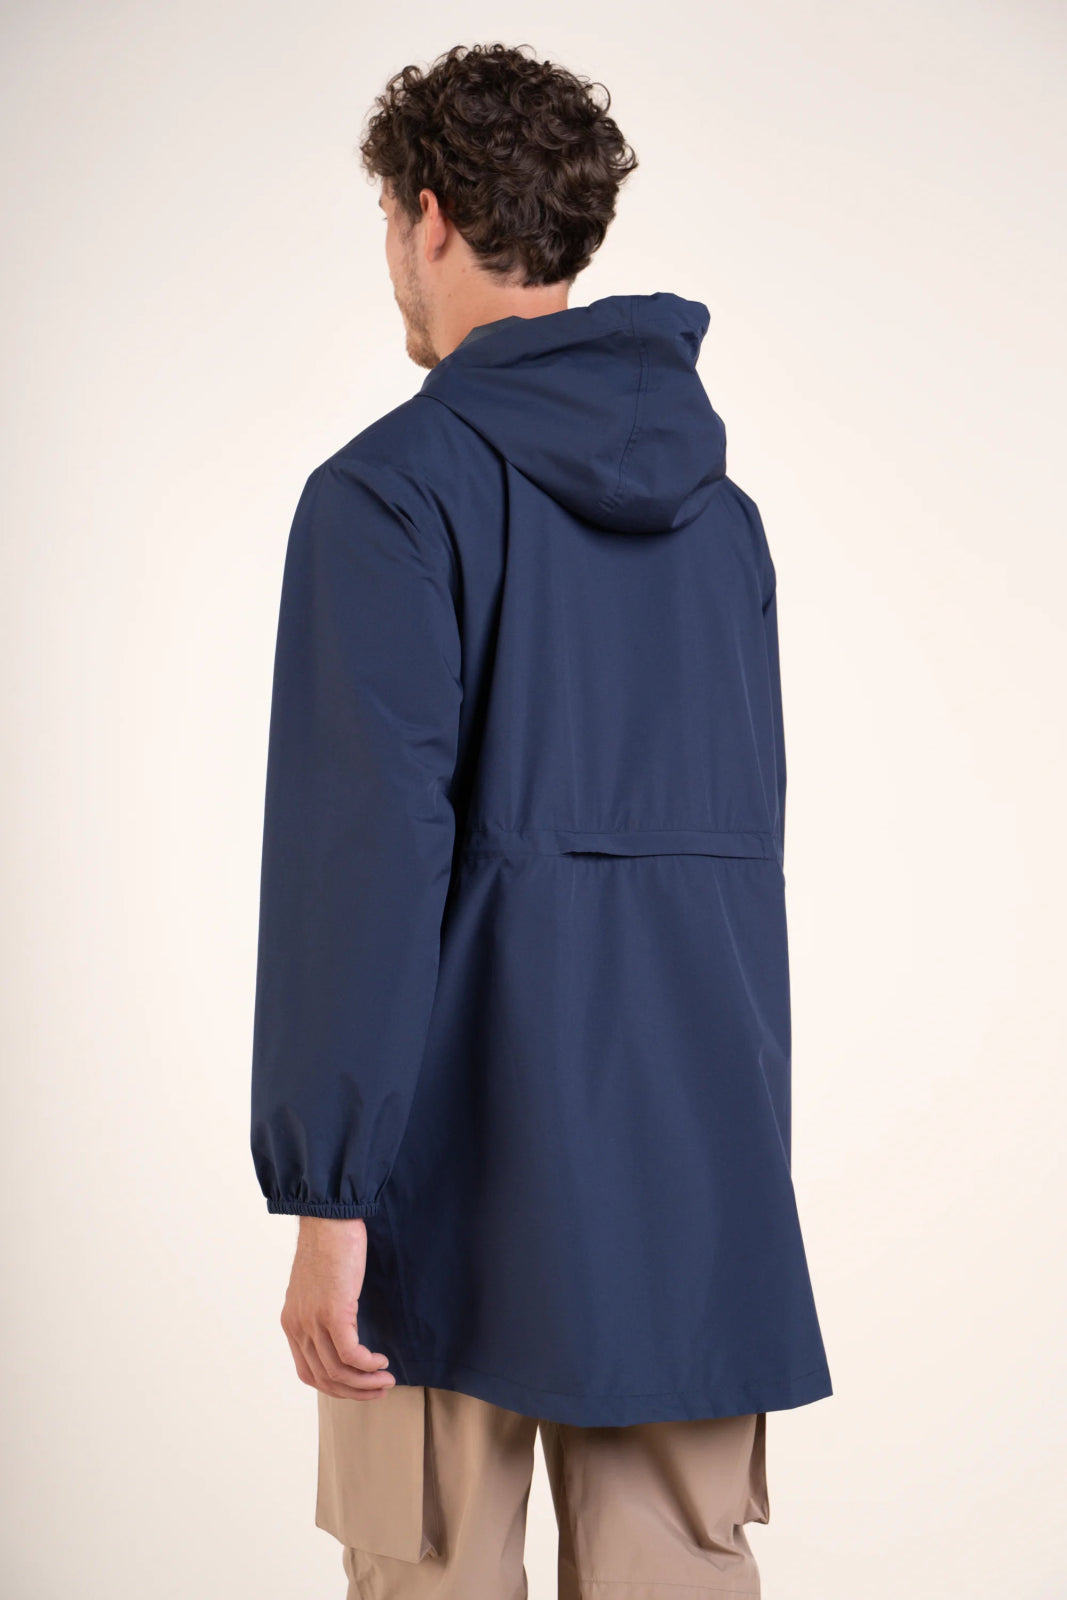 Amelot Classique - Long raincoat - Flotte #couleur_indigo